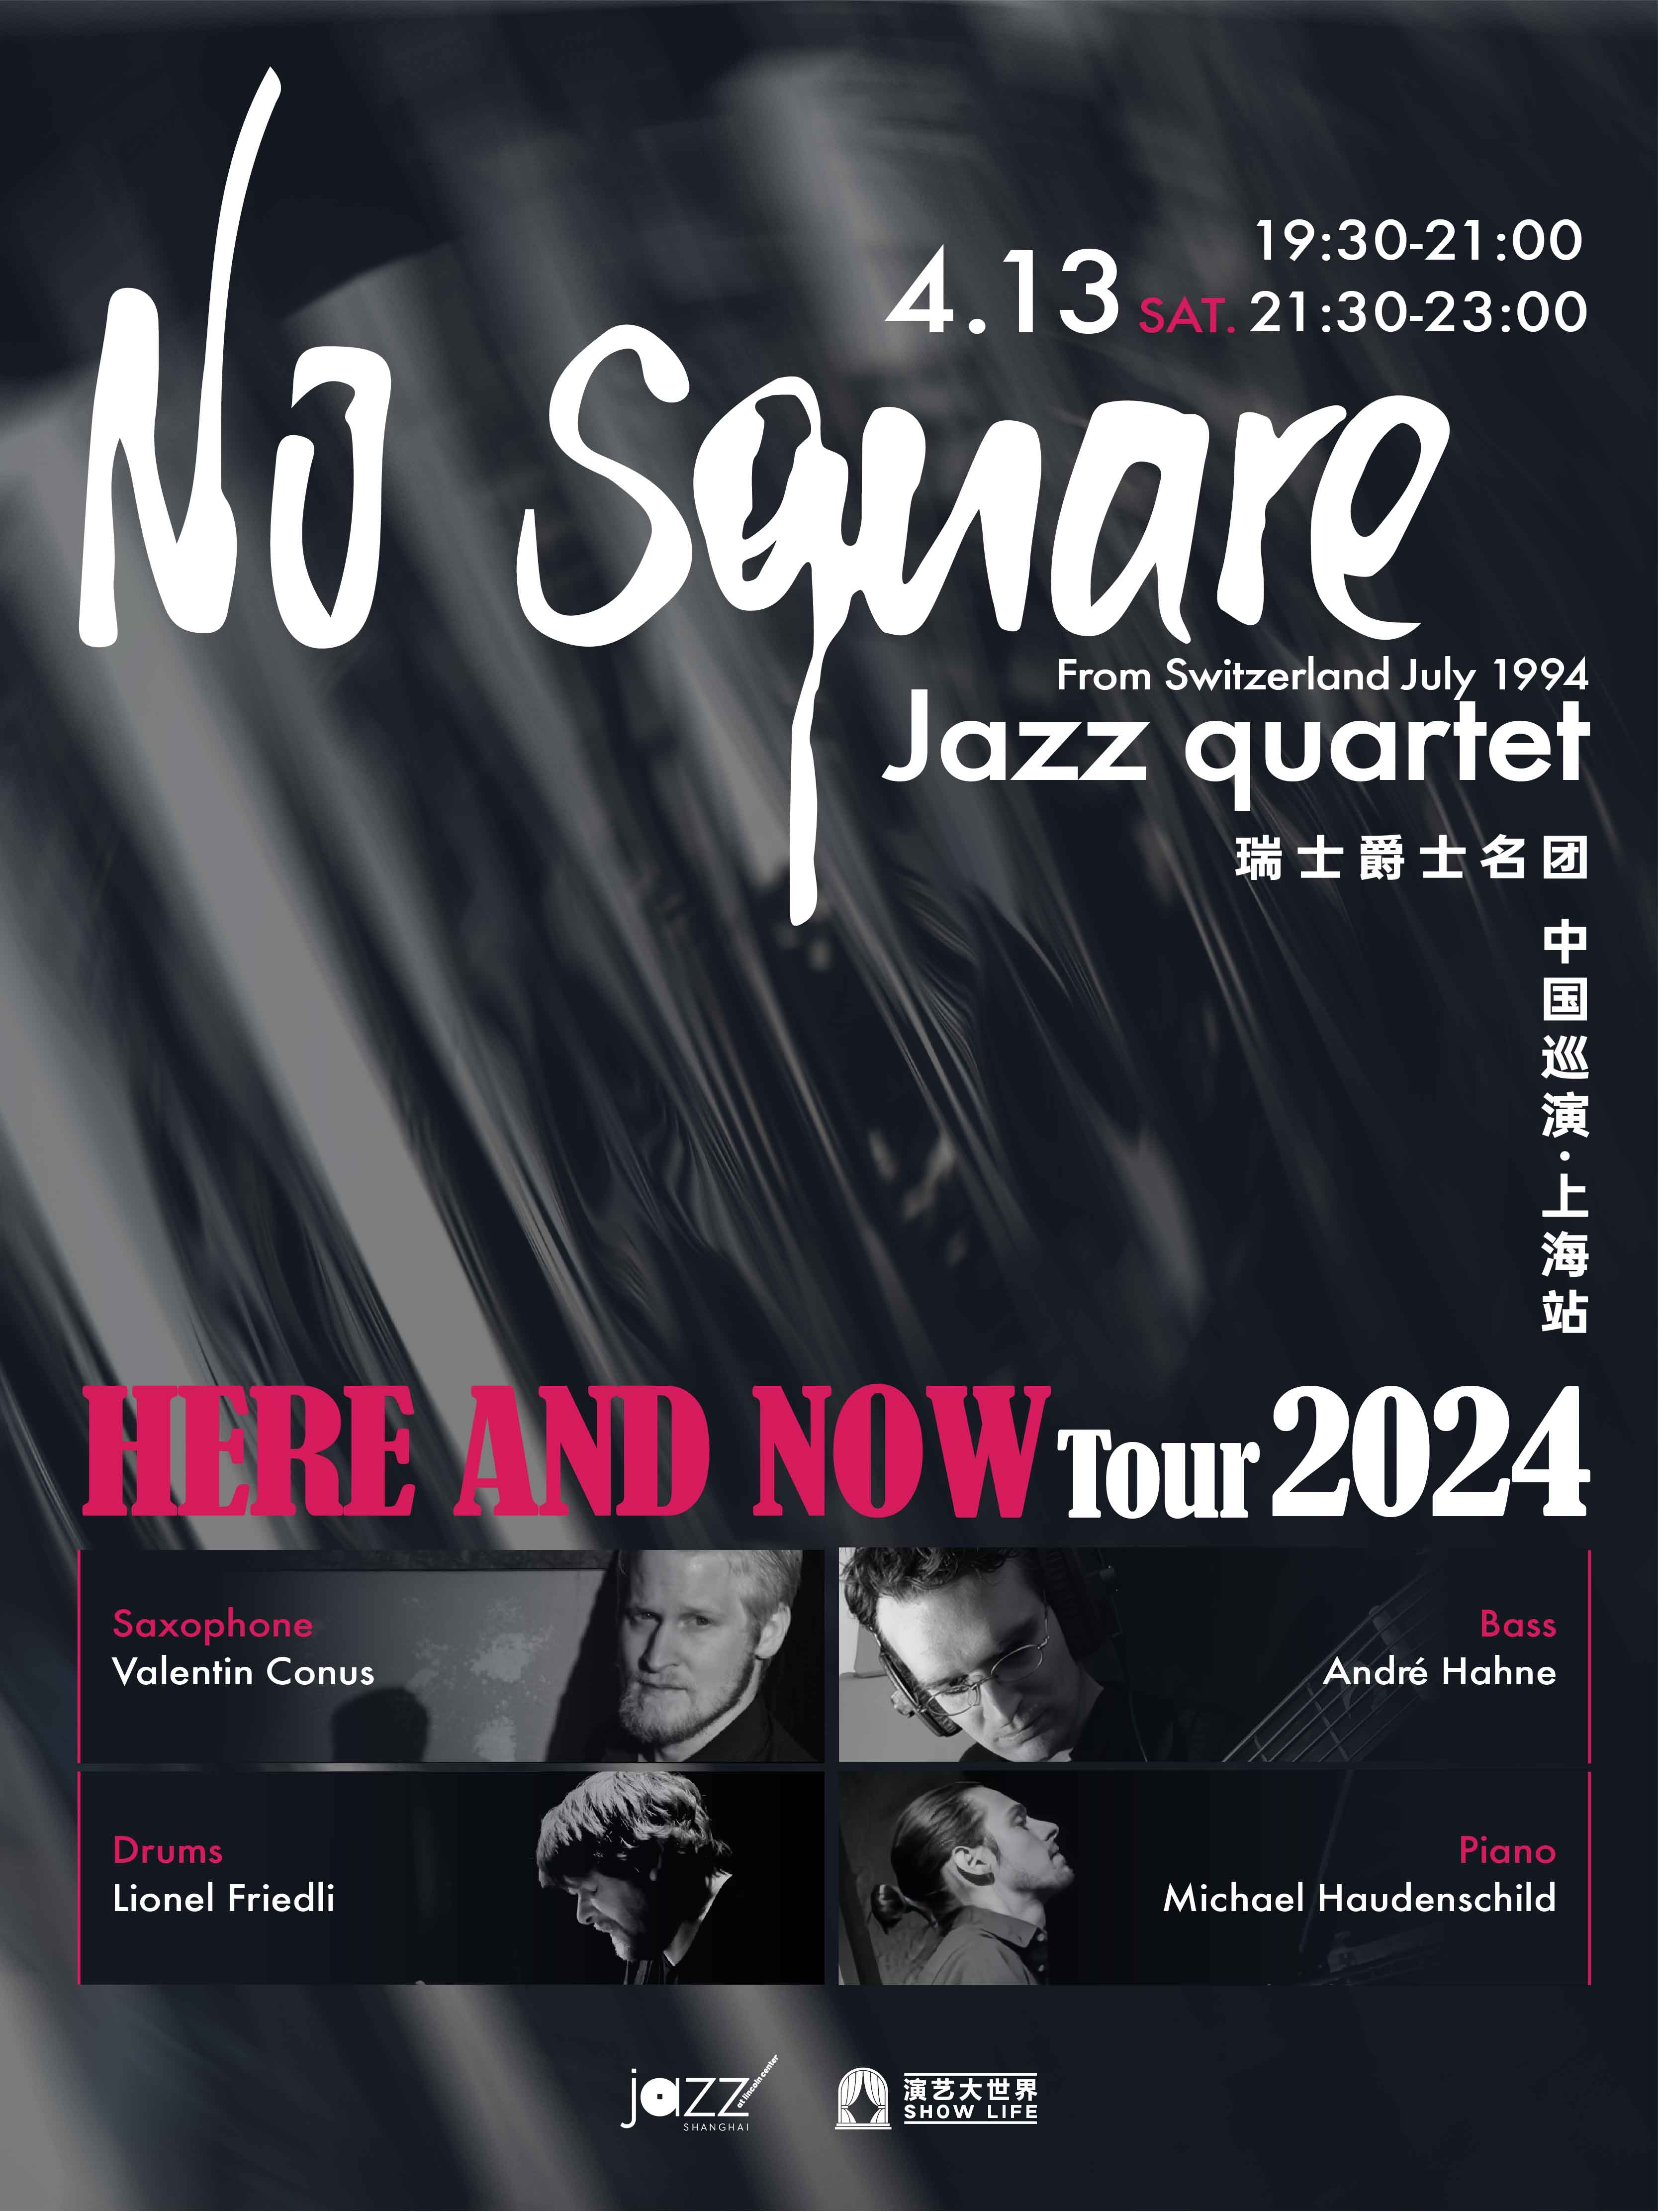 [Jazz @ Lincoln Center Shanghai] No Square Jazz Quartet